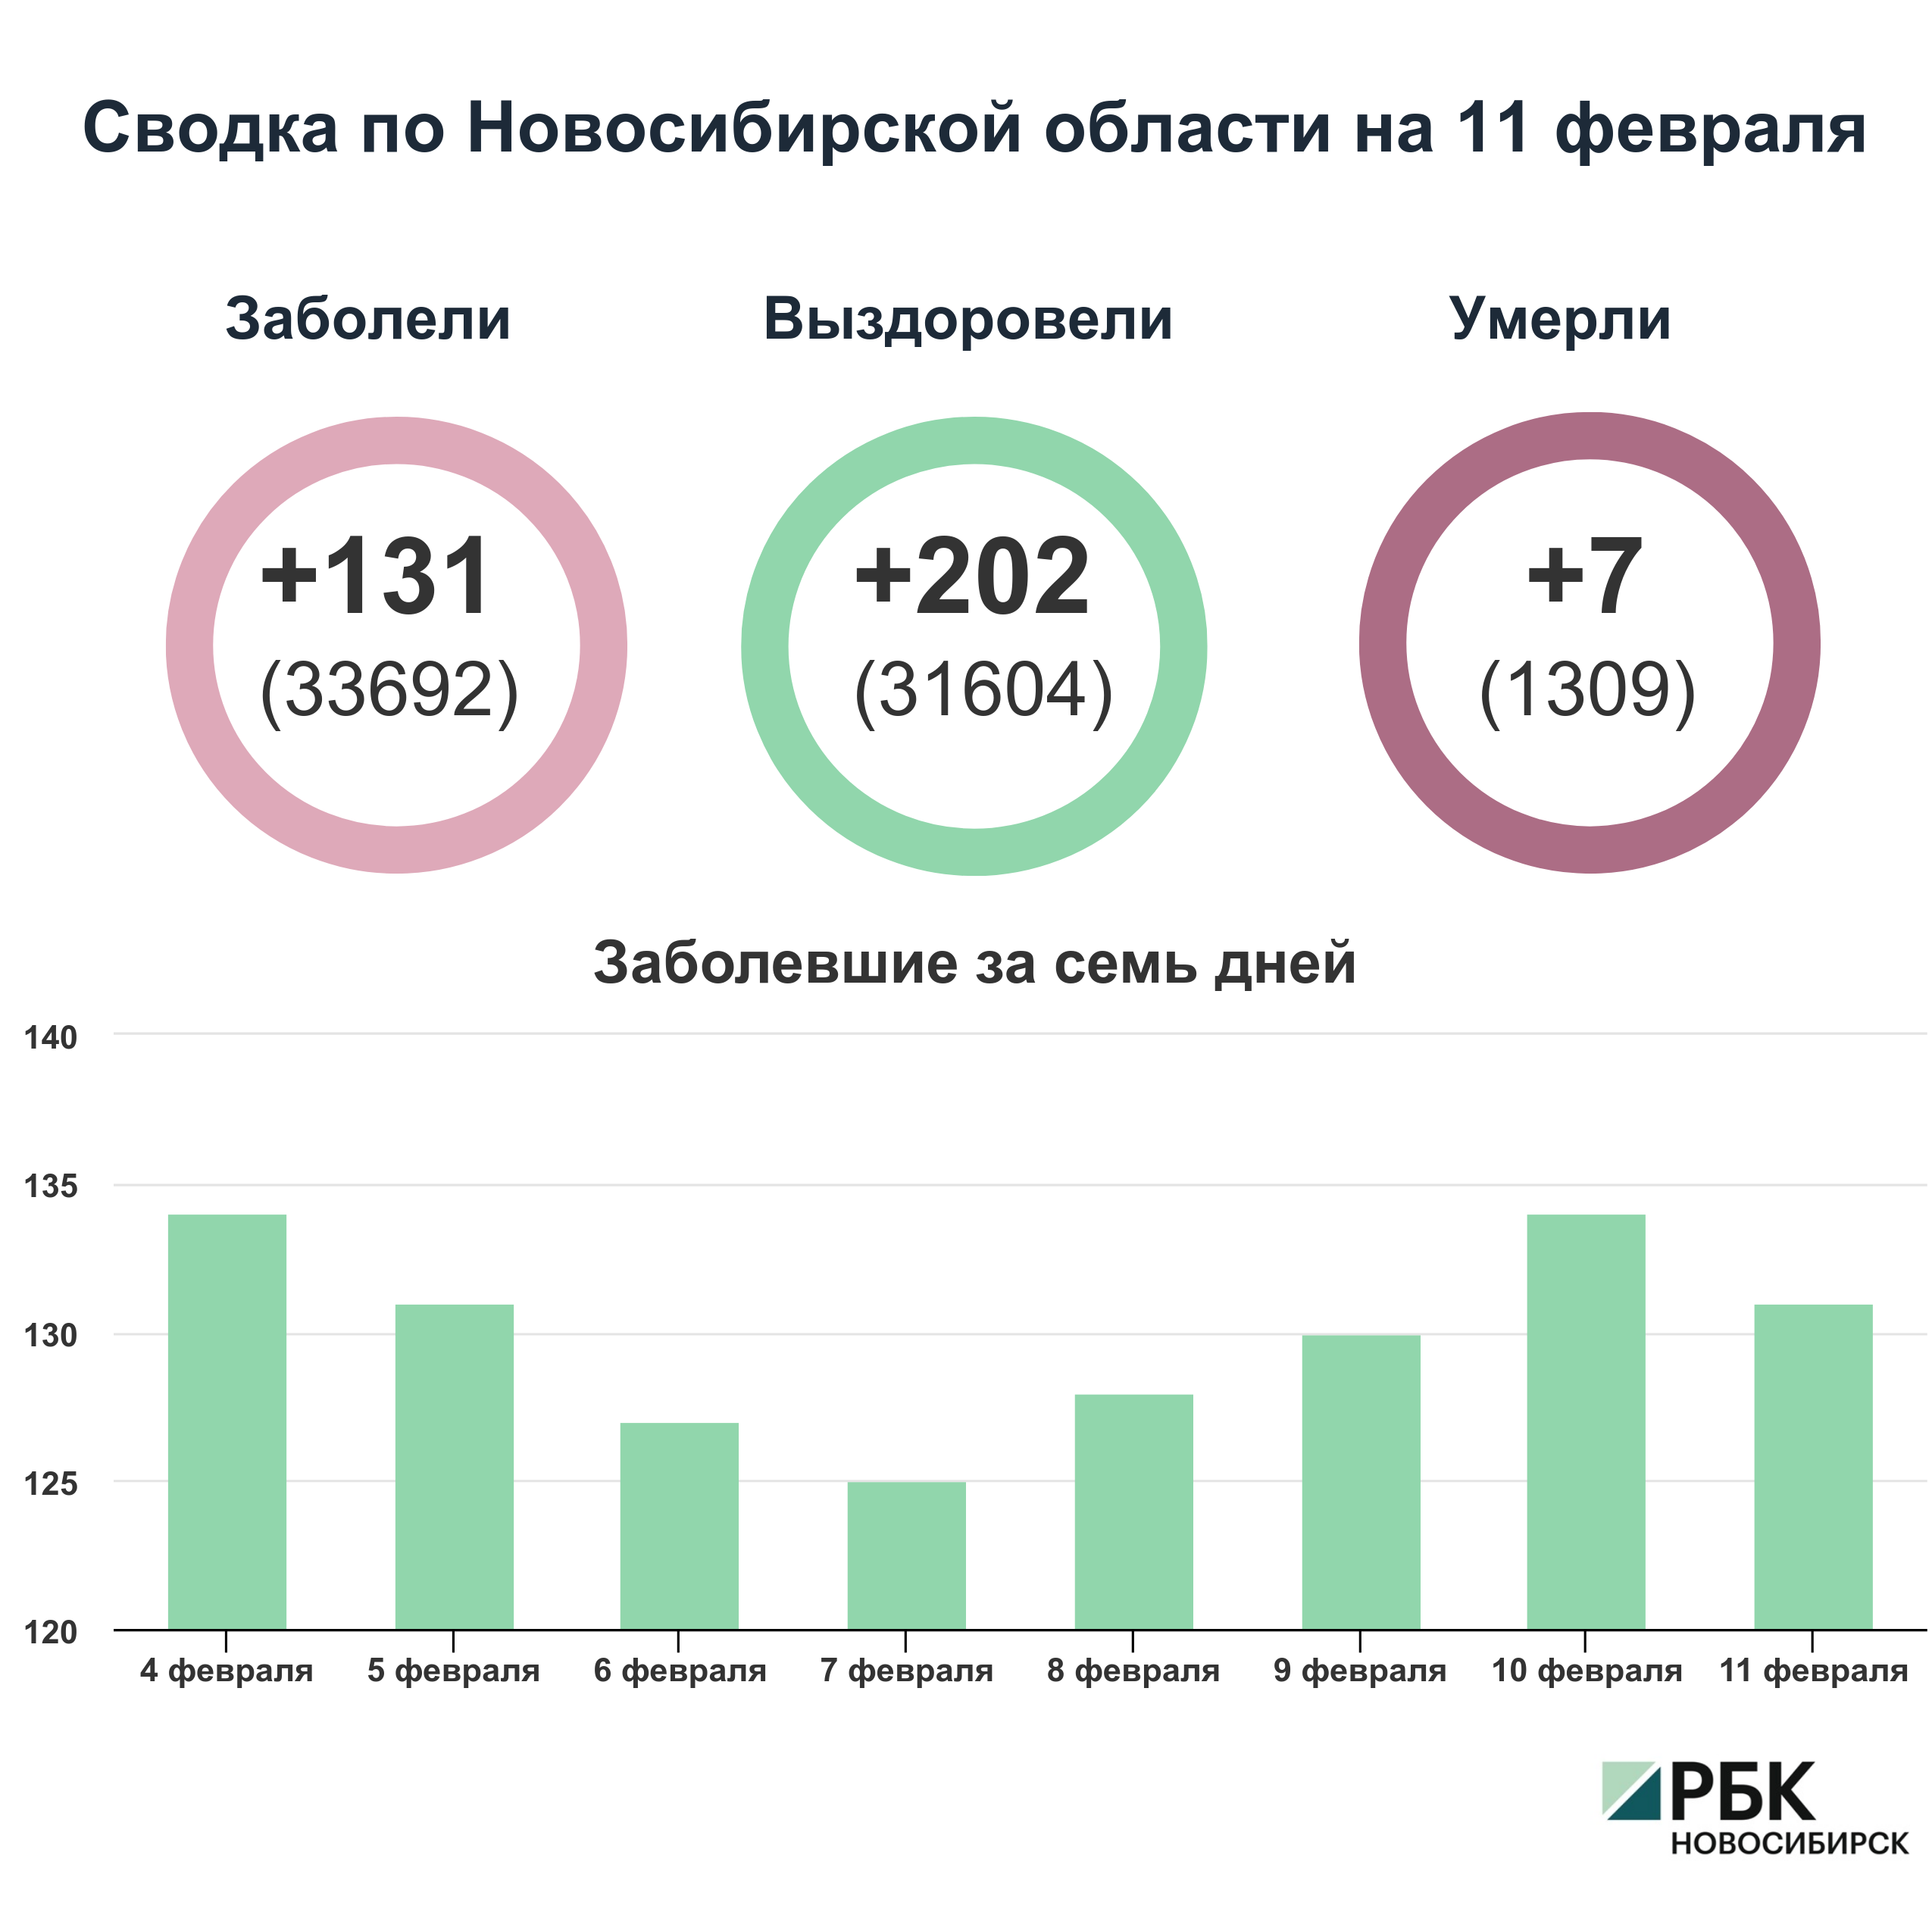 Коронавирус в Новосибирске: сводка на 11 февраля